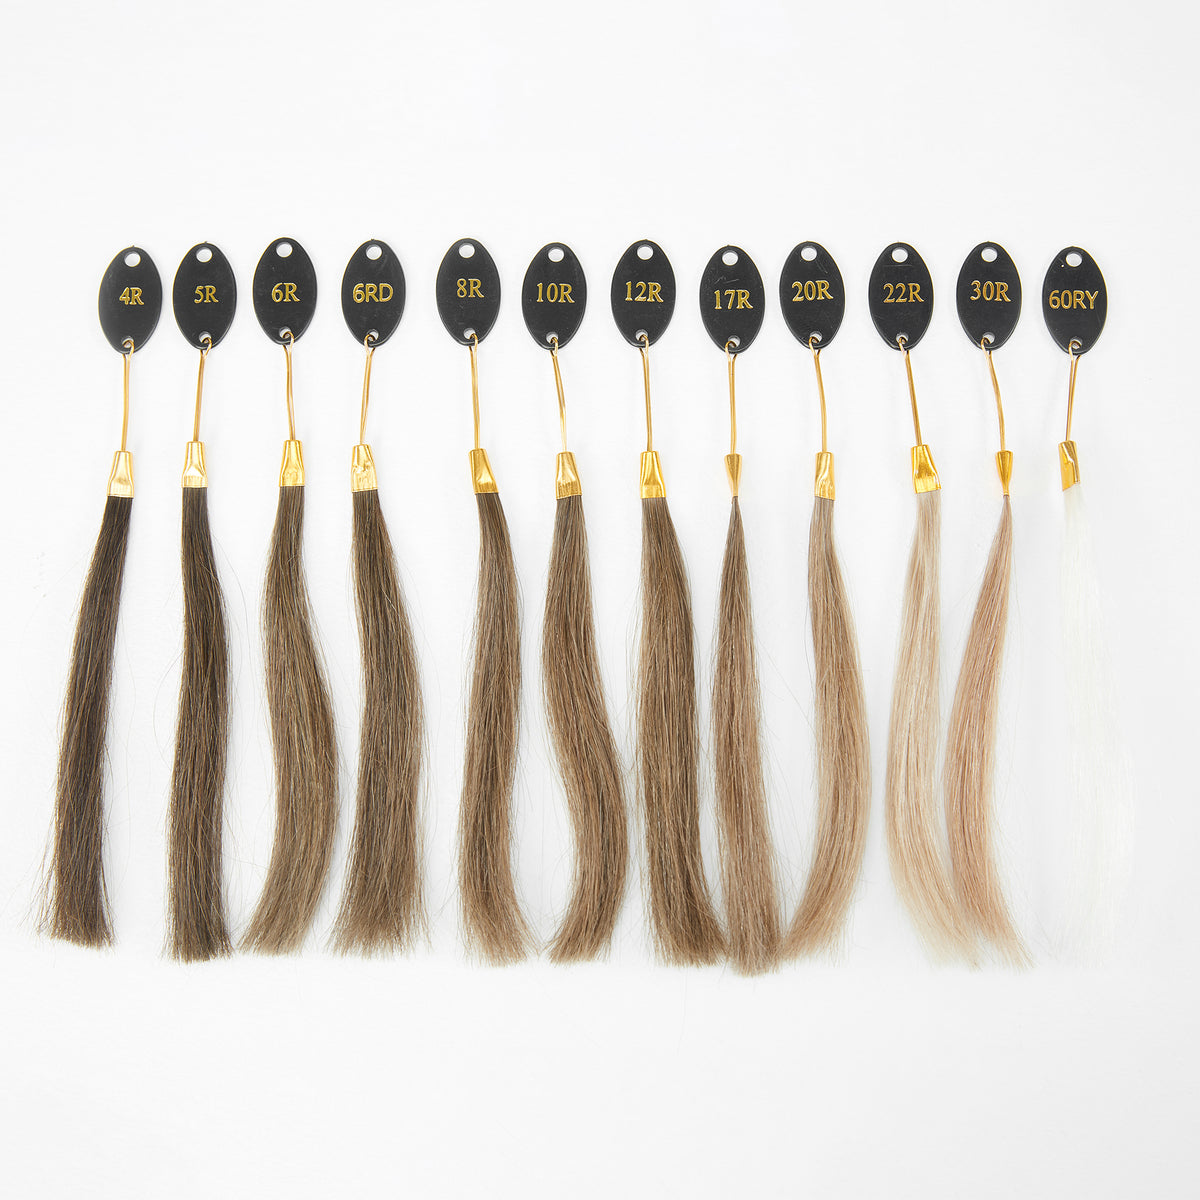 Haarsystem Farbring | Toupet-Haarprobe zum Anpassen Ihrer Haarfarbe